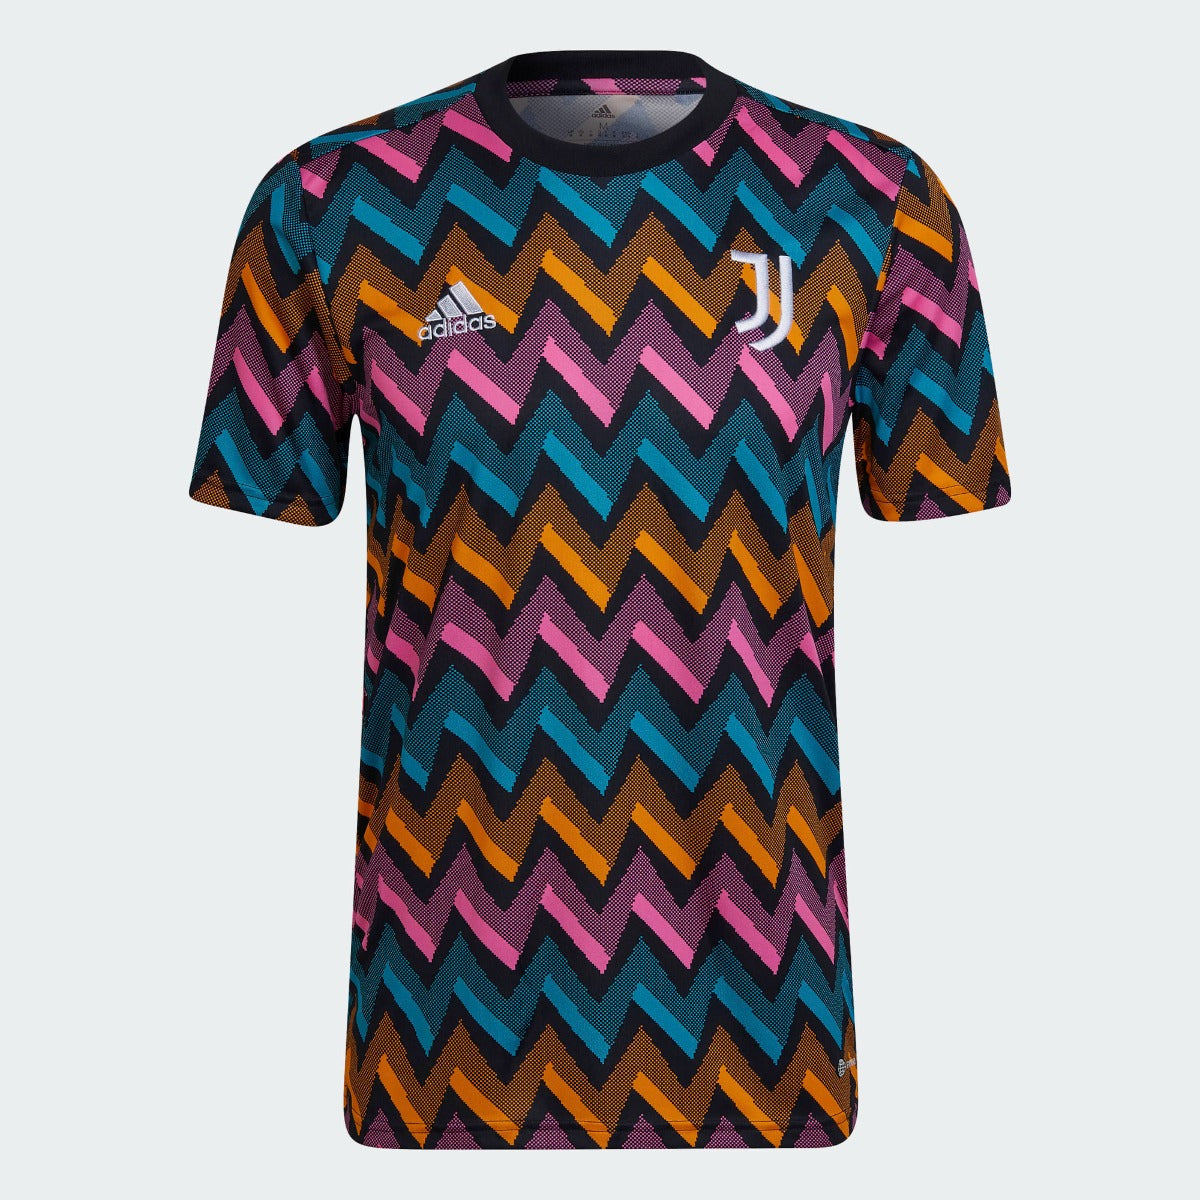 adidas 21-22 Juventus Pre-Match Jersey - Black-Pink-Orange-Aqua (Front)